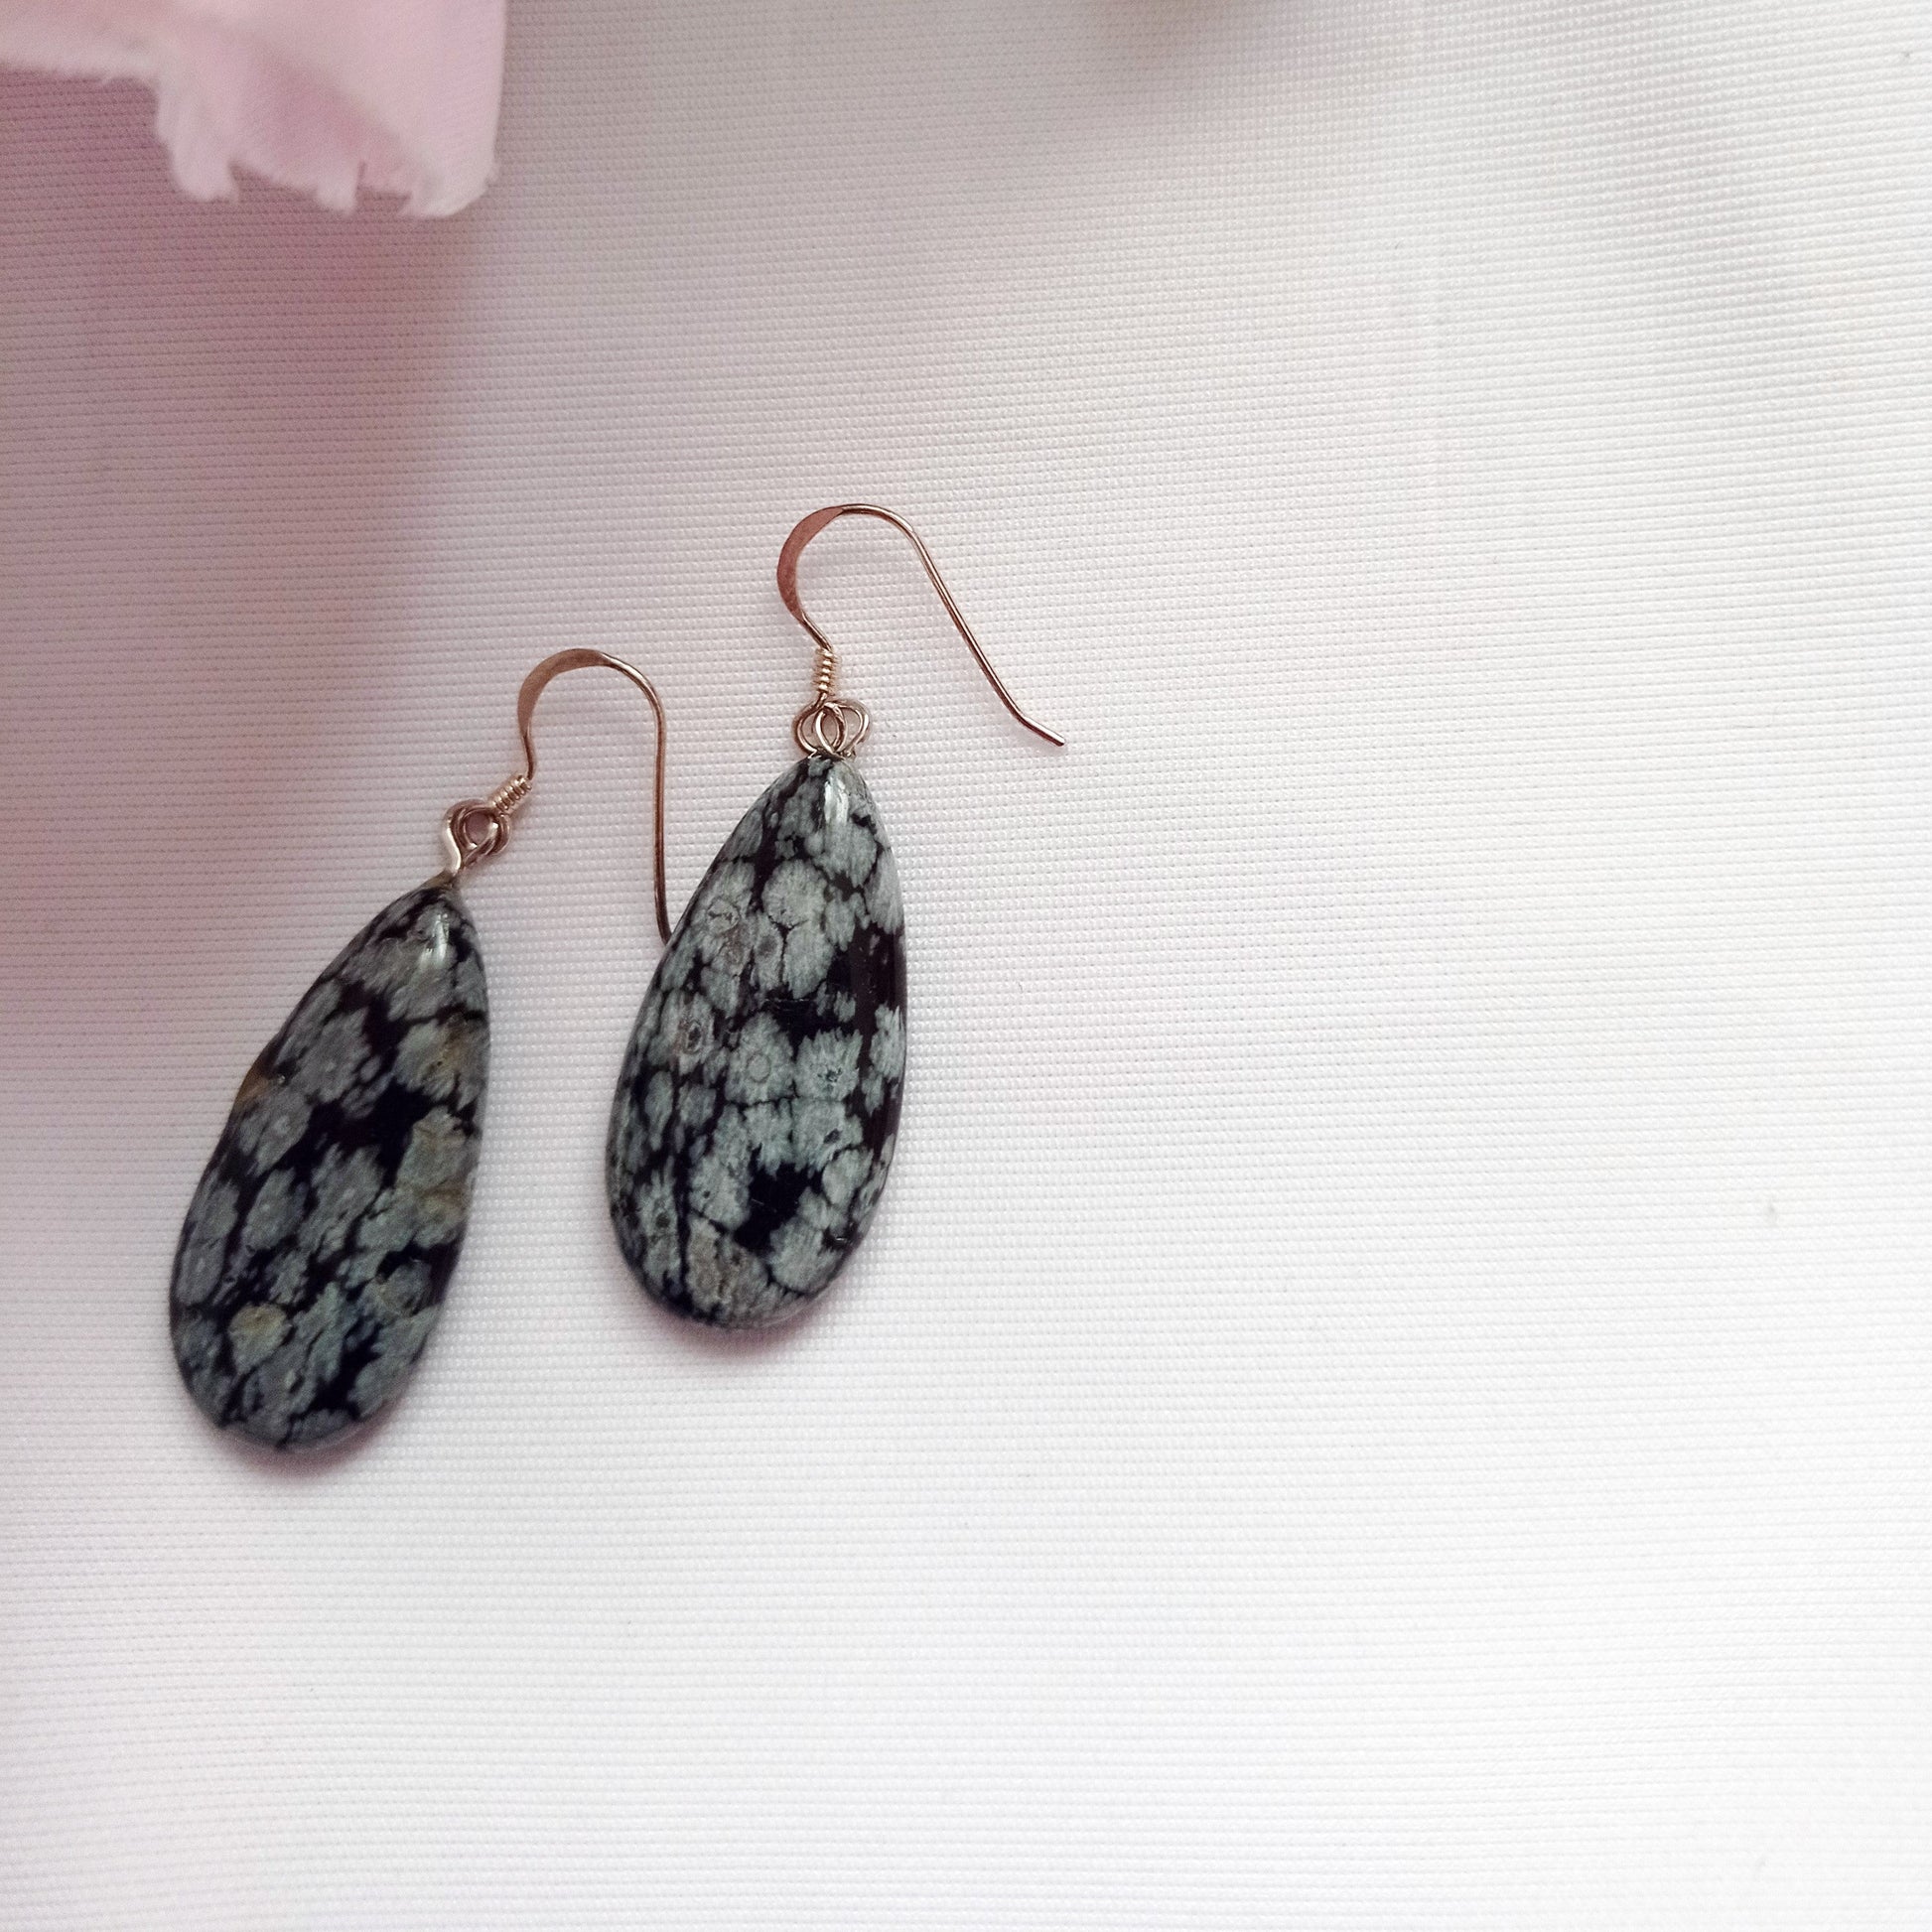 Snowflake Obsidian Earrings, Teardrop Sterling Silver Earrings, Gemstone Earrings | by nlanlaVictory-2